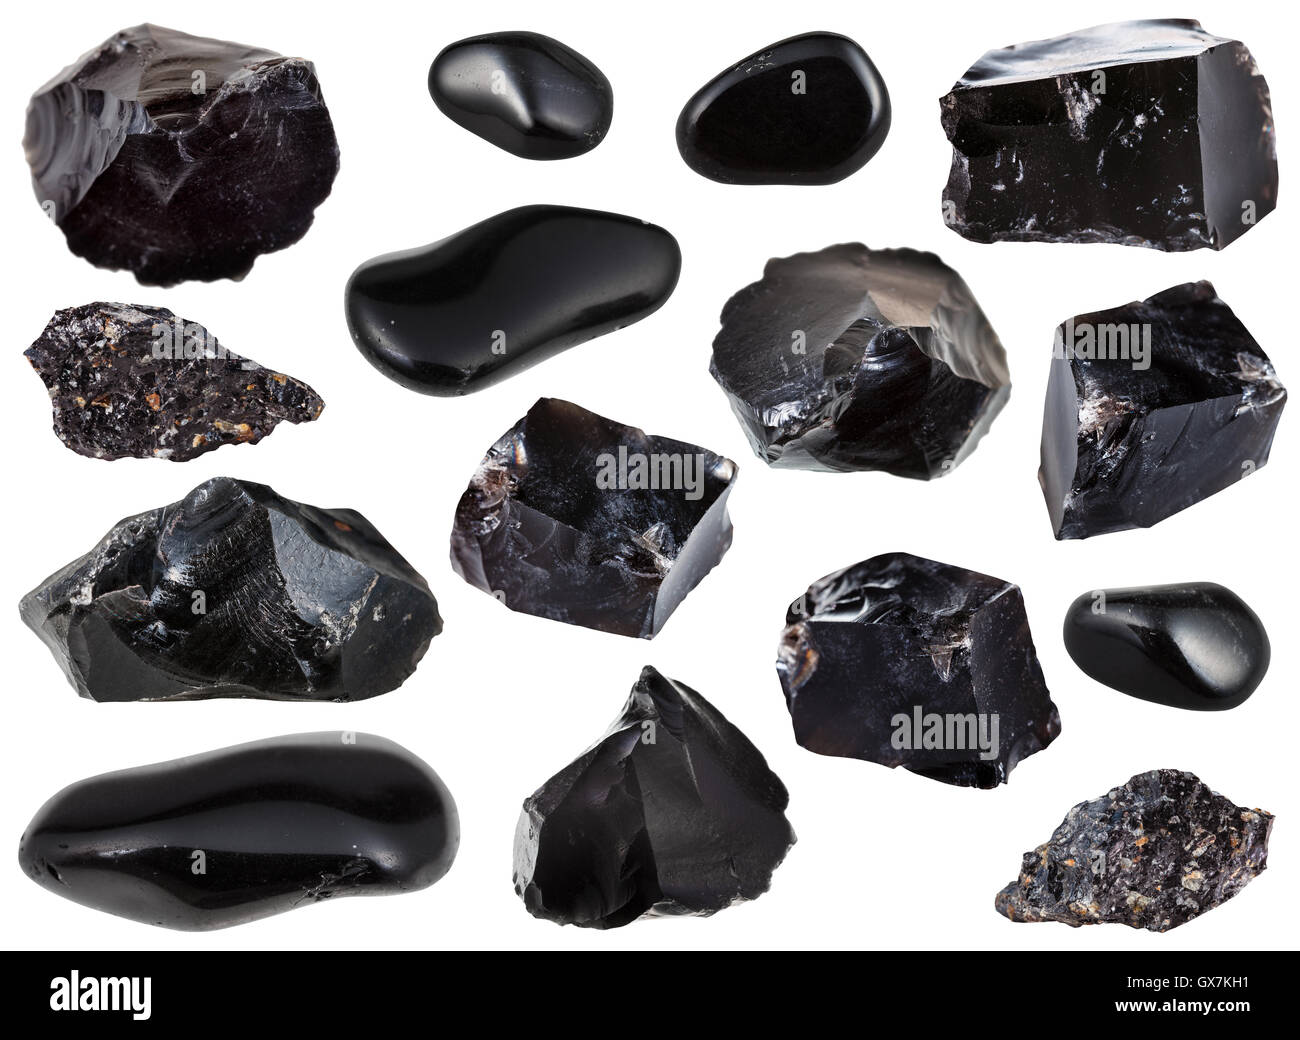 Sammlung von Proben von schwarzer Obsidian (vulkanisches Glas) Stein  isoliert auf weißem Hintergrund Stockfotografie - Alamy